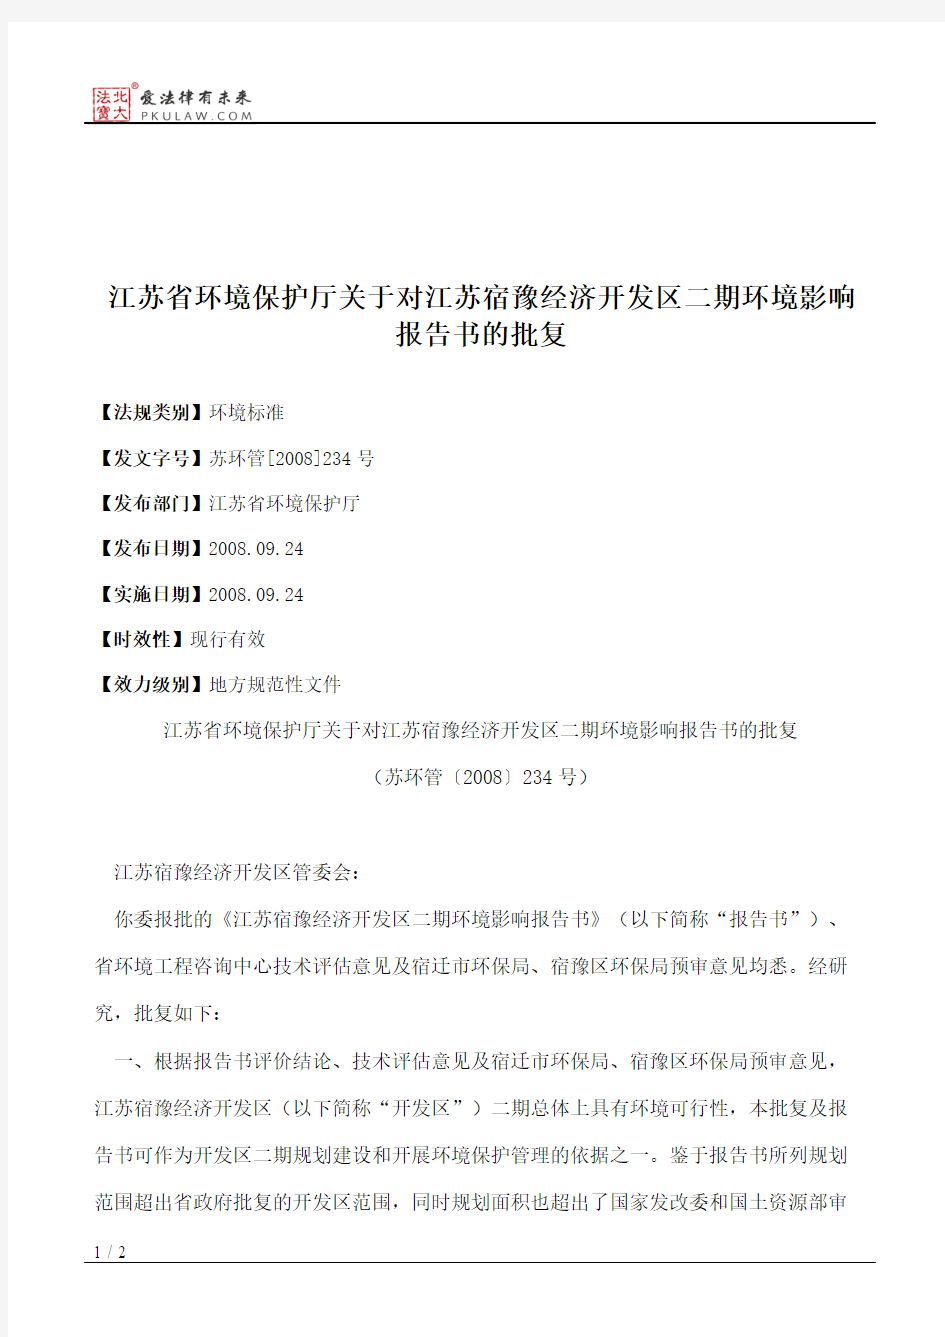 江苏省环境保护厅关于对江苏宿豫经济开发区二期环境影响报告书的批复